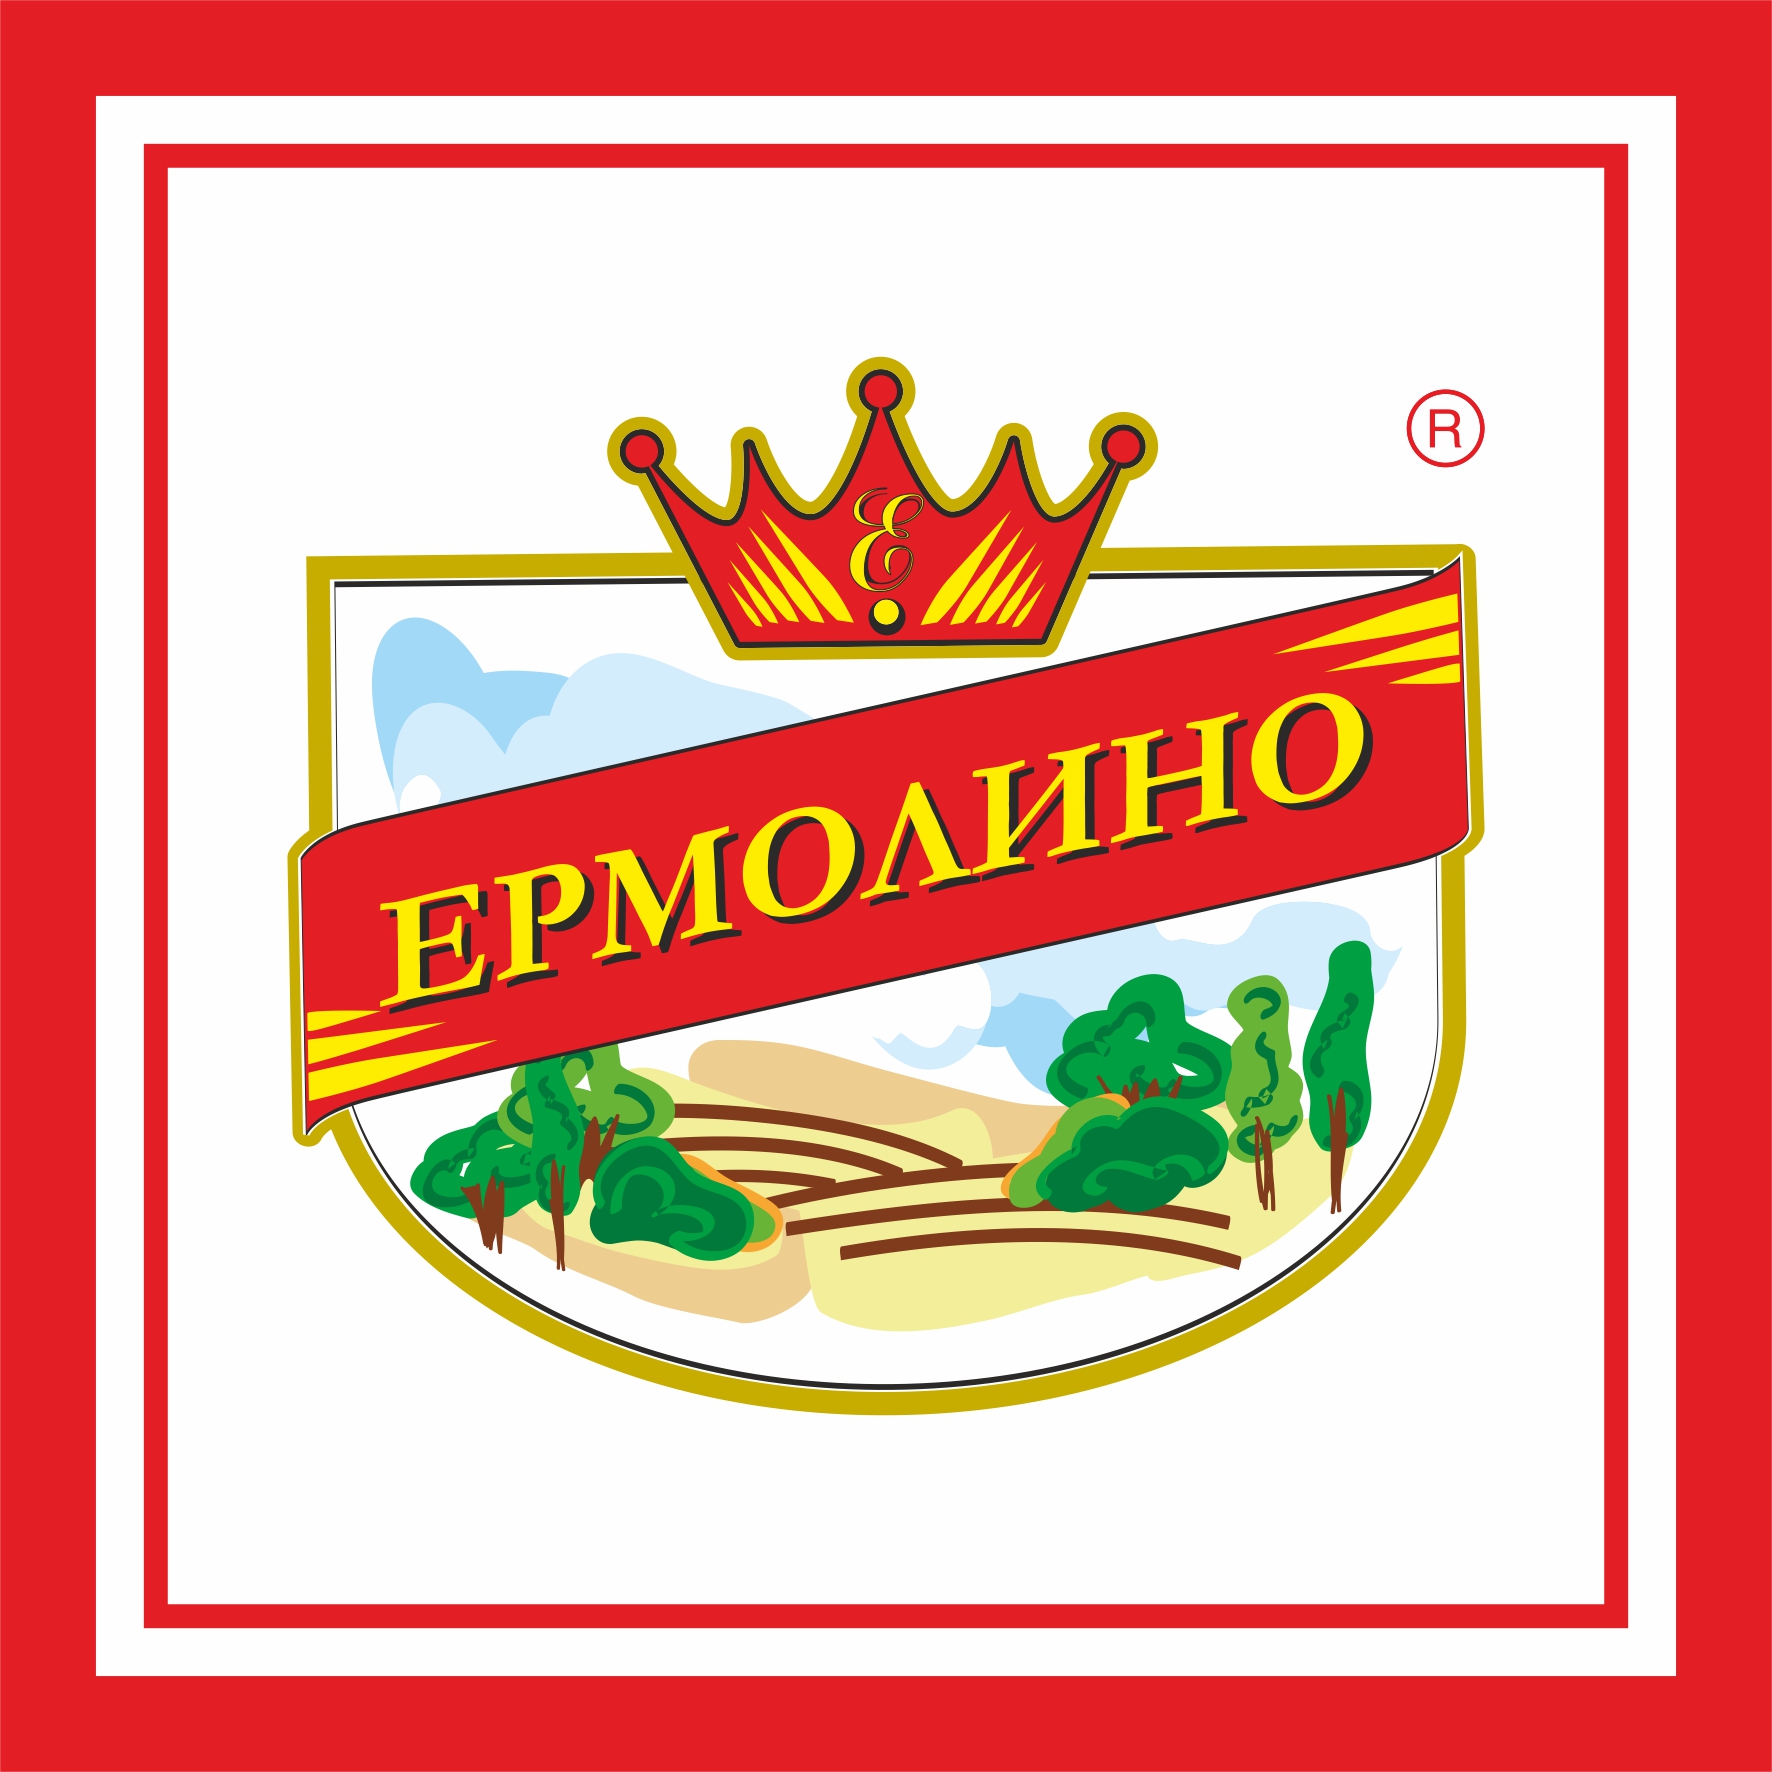 Ермолино. Логотип Ермолино продукты. Продукты Ермолино лого. Ермолинские продукты логотип. Ермолино полуфабрикаты.